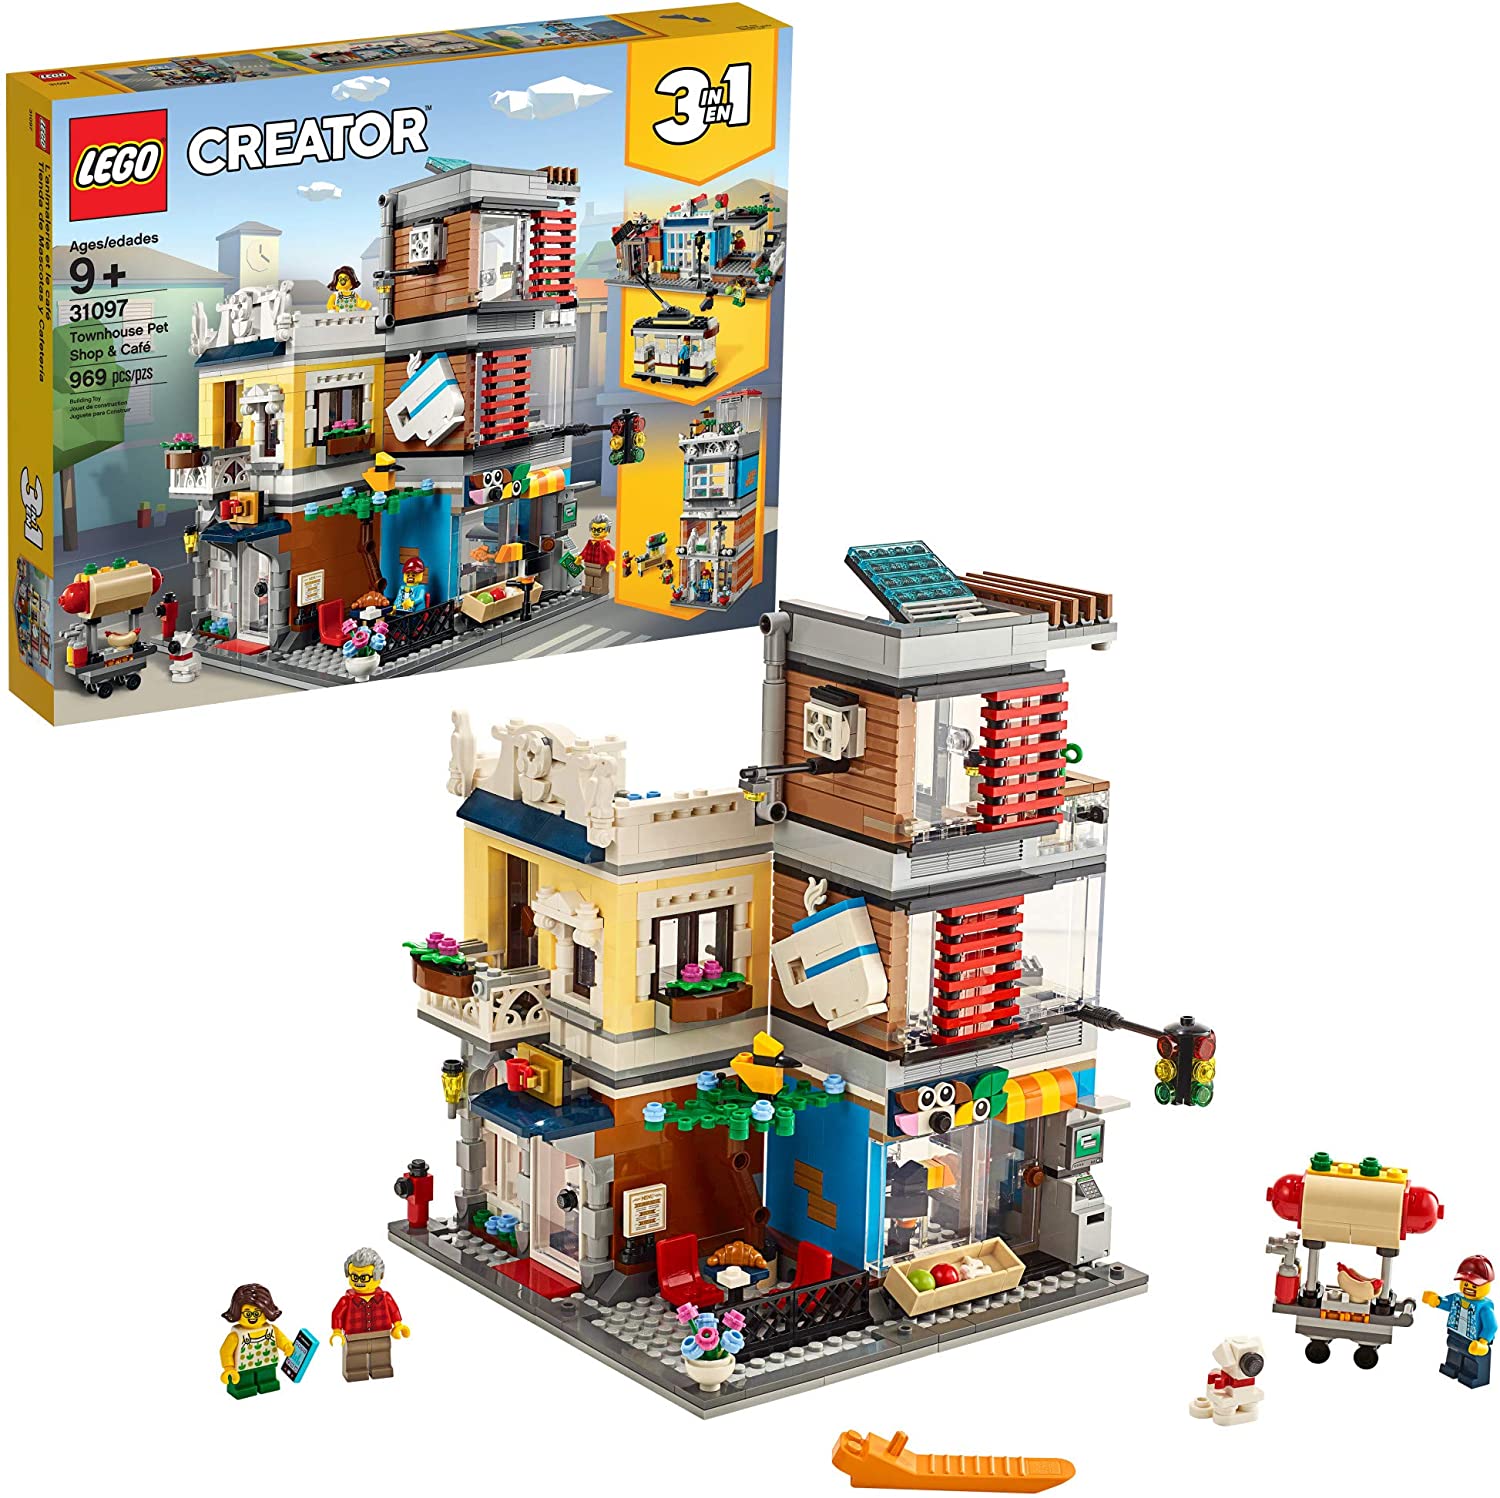 レゴ クリエイター タウンハウス ペットショップ カフェ 31097 LEGO Creator 3in1 Townhouse Pet Shop＆Café 【 レゴブロック おもちゃ 鑑賞 コレクション プレゼント 誕生日 贈り物 ご褒美 】 並行輸入品